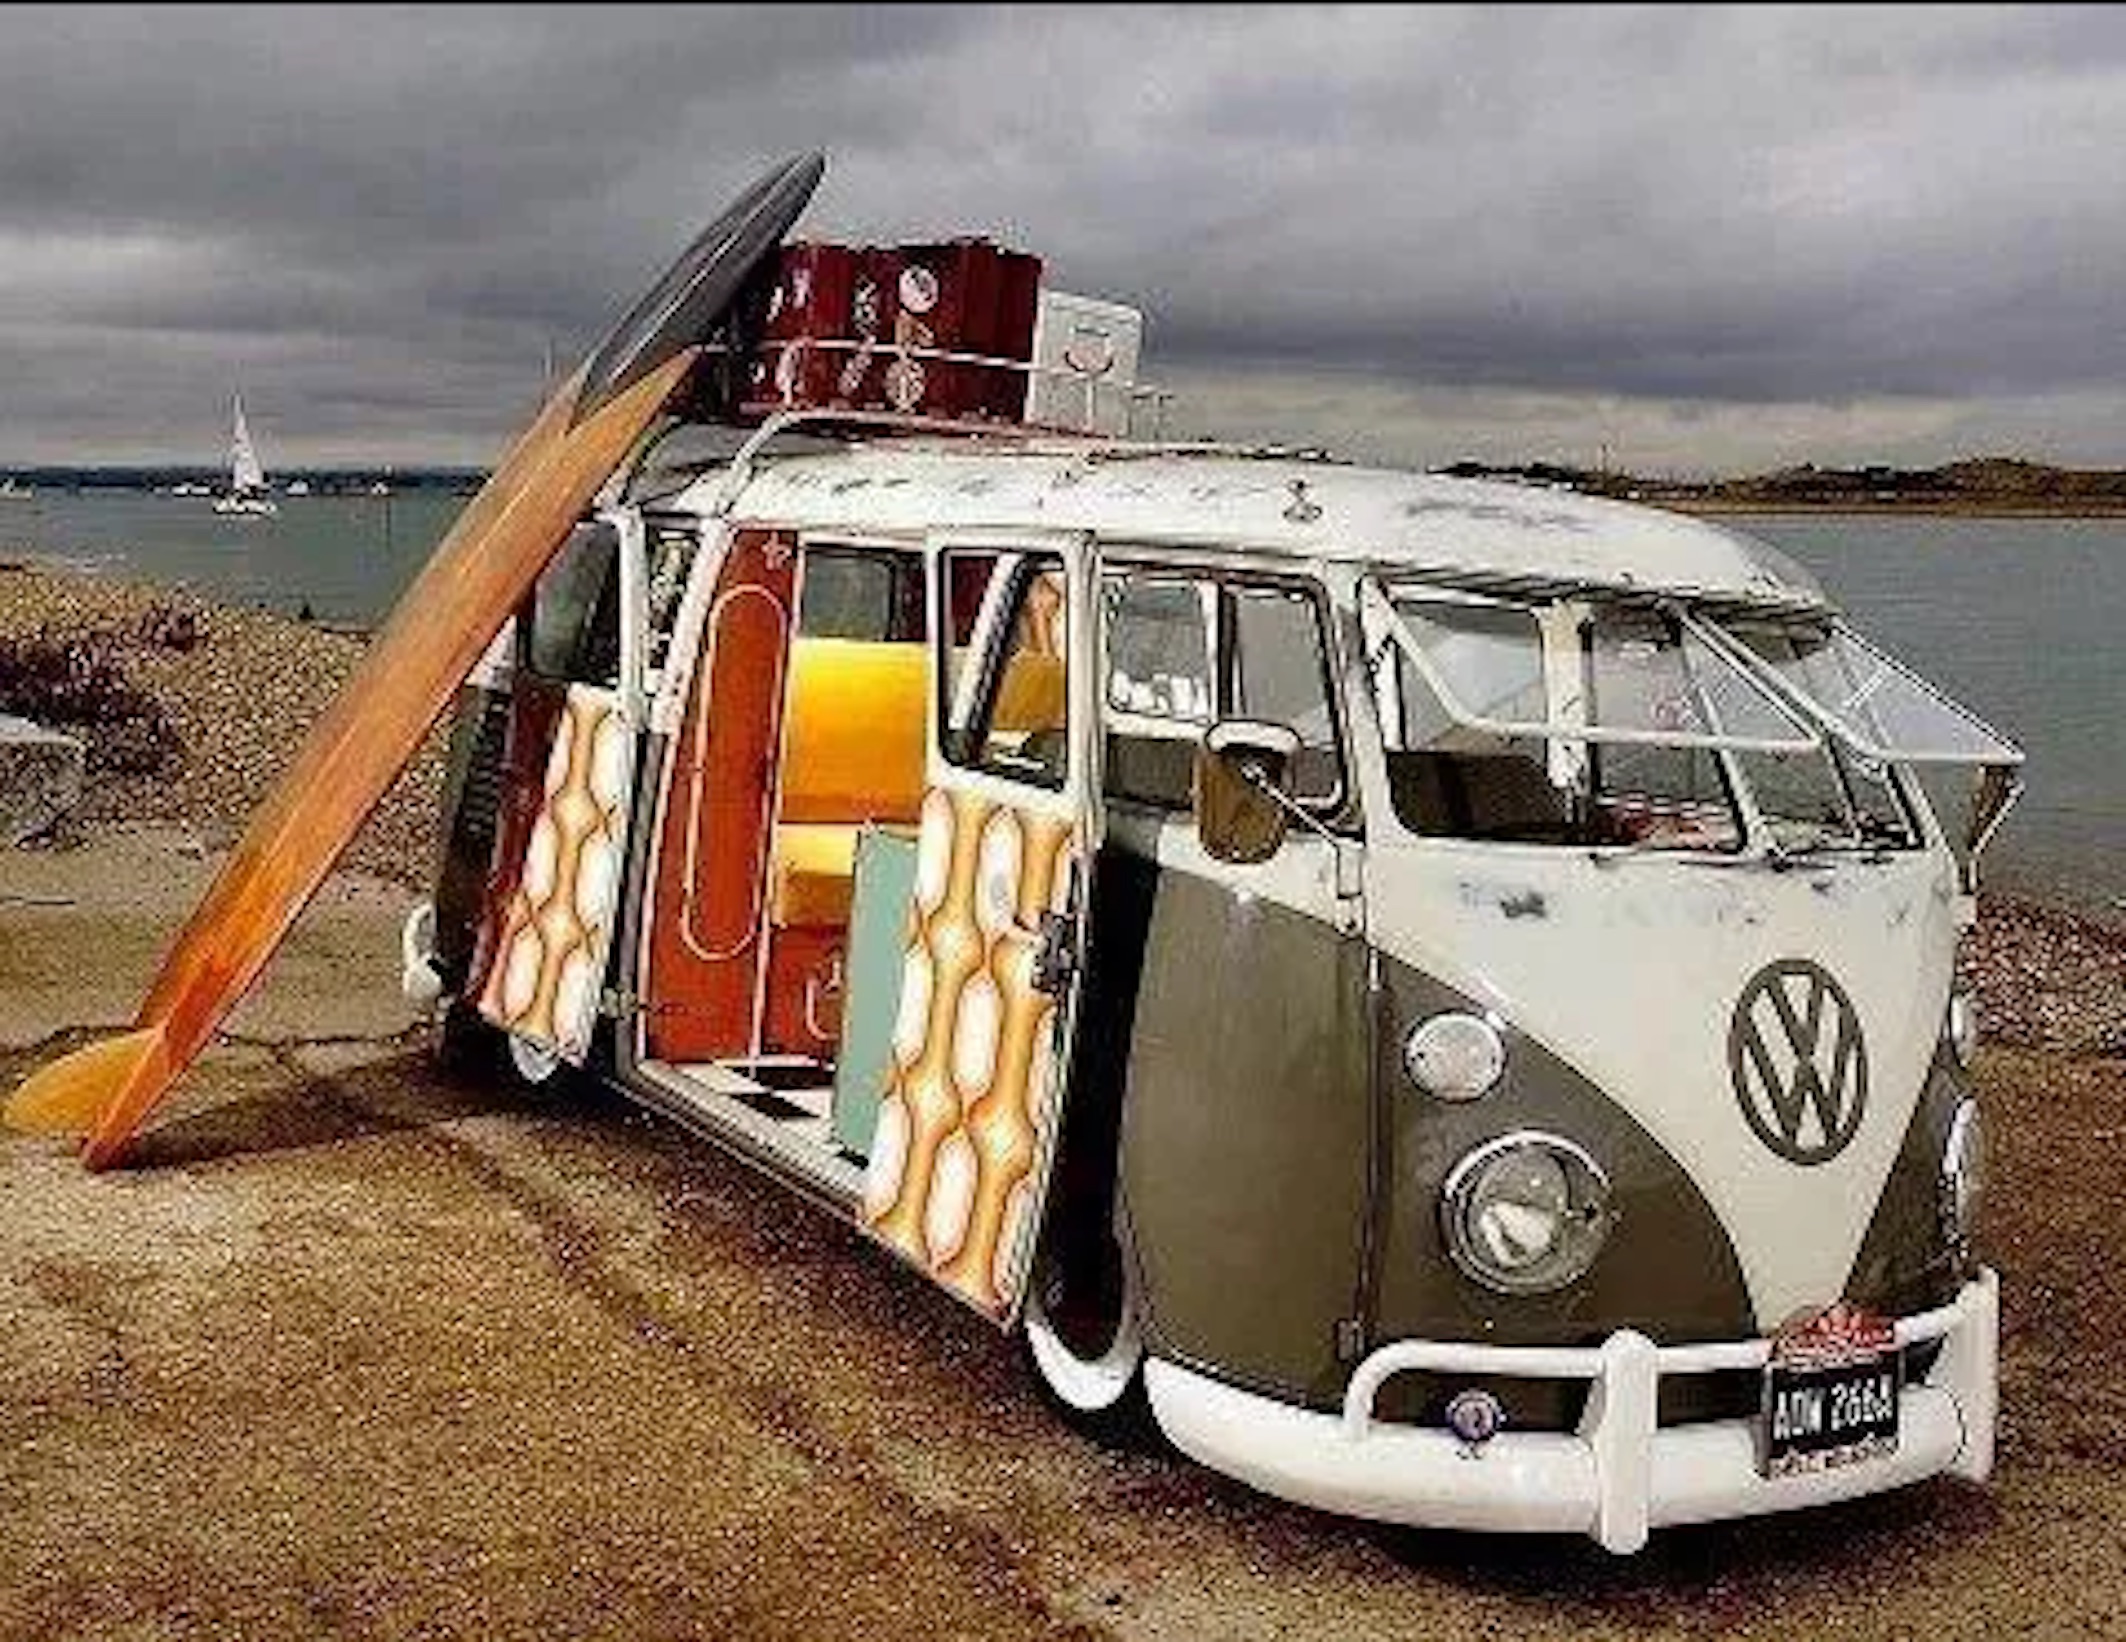 minivan hippie